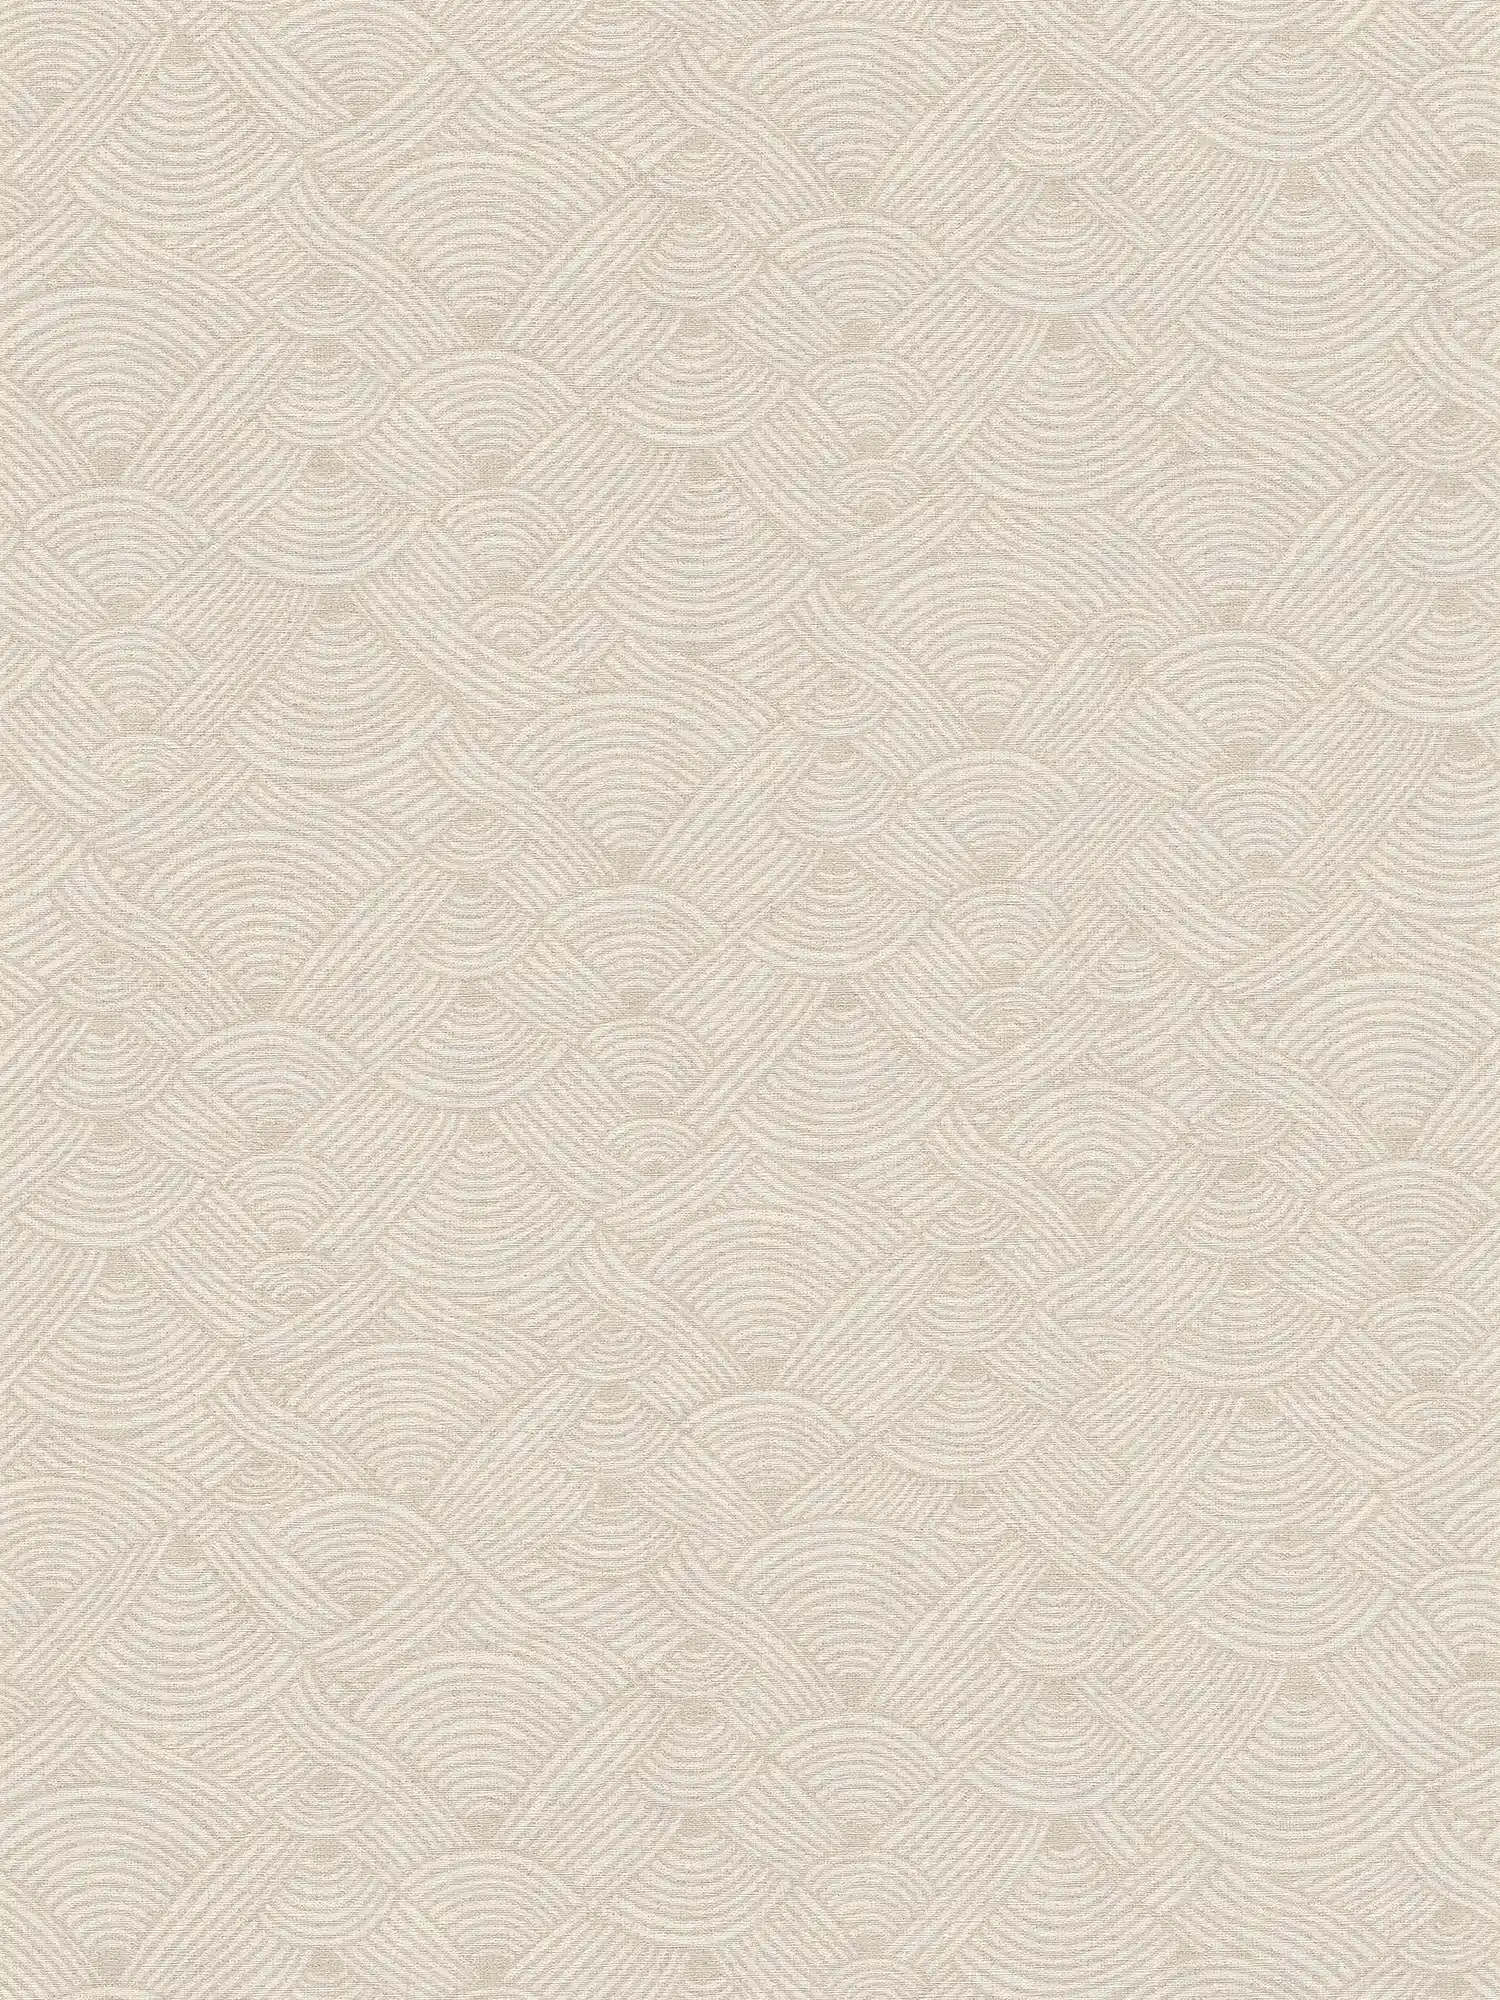 Crème beige behang golfpatroon met structuurdetails in ethno stijl
